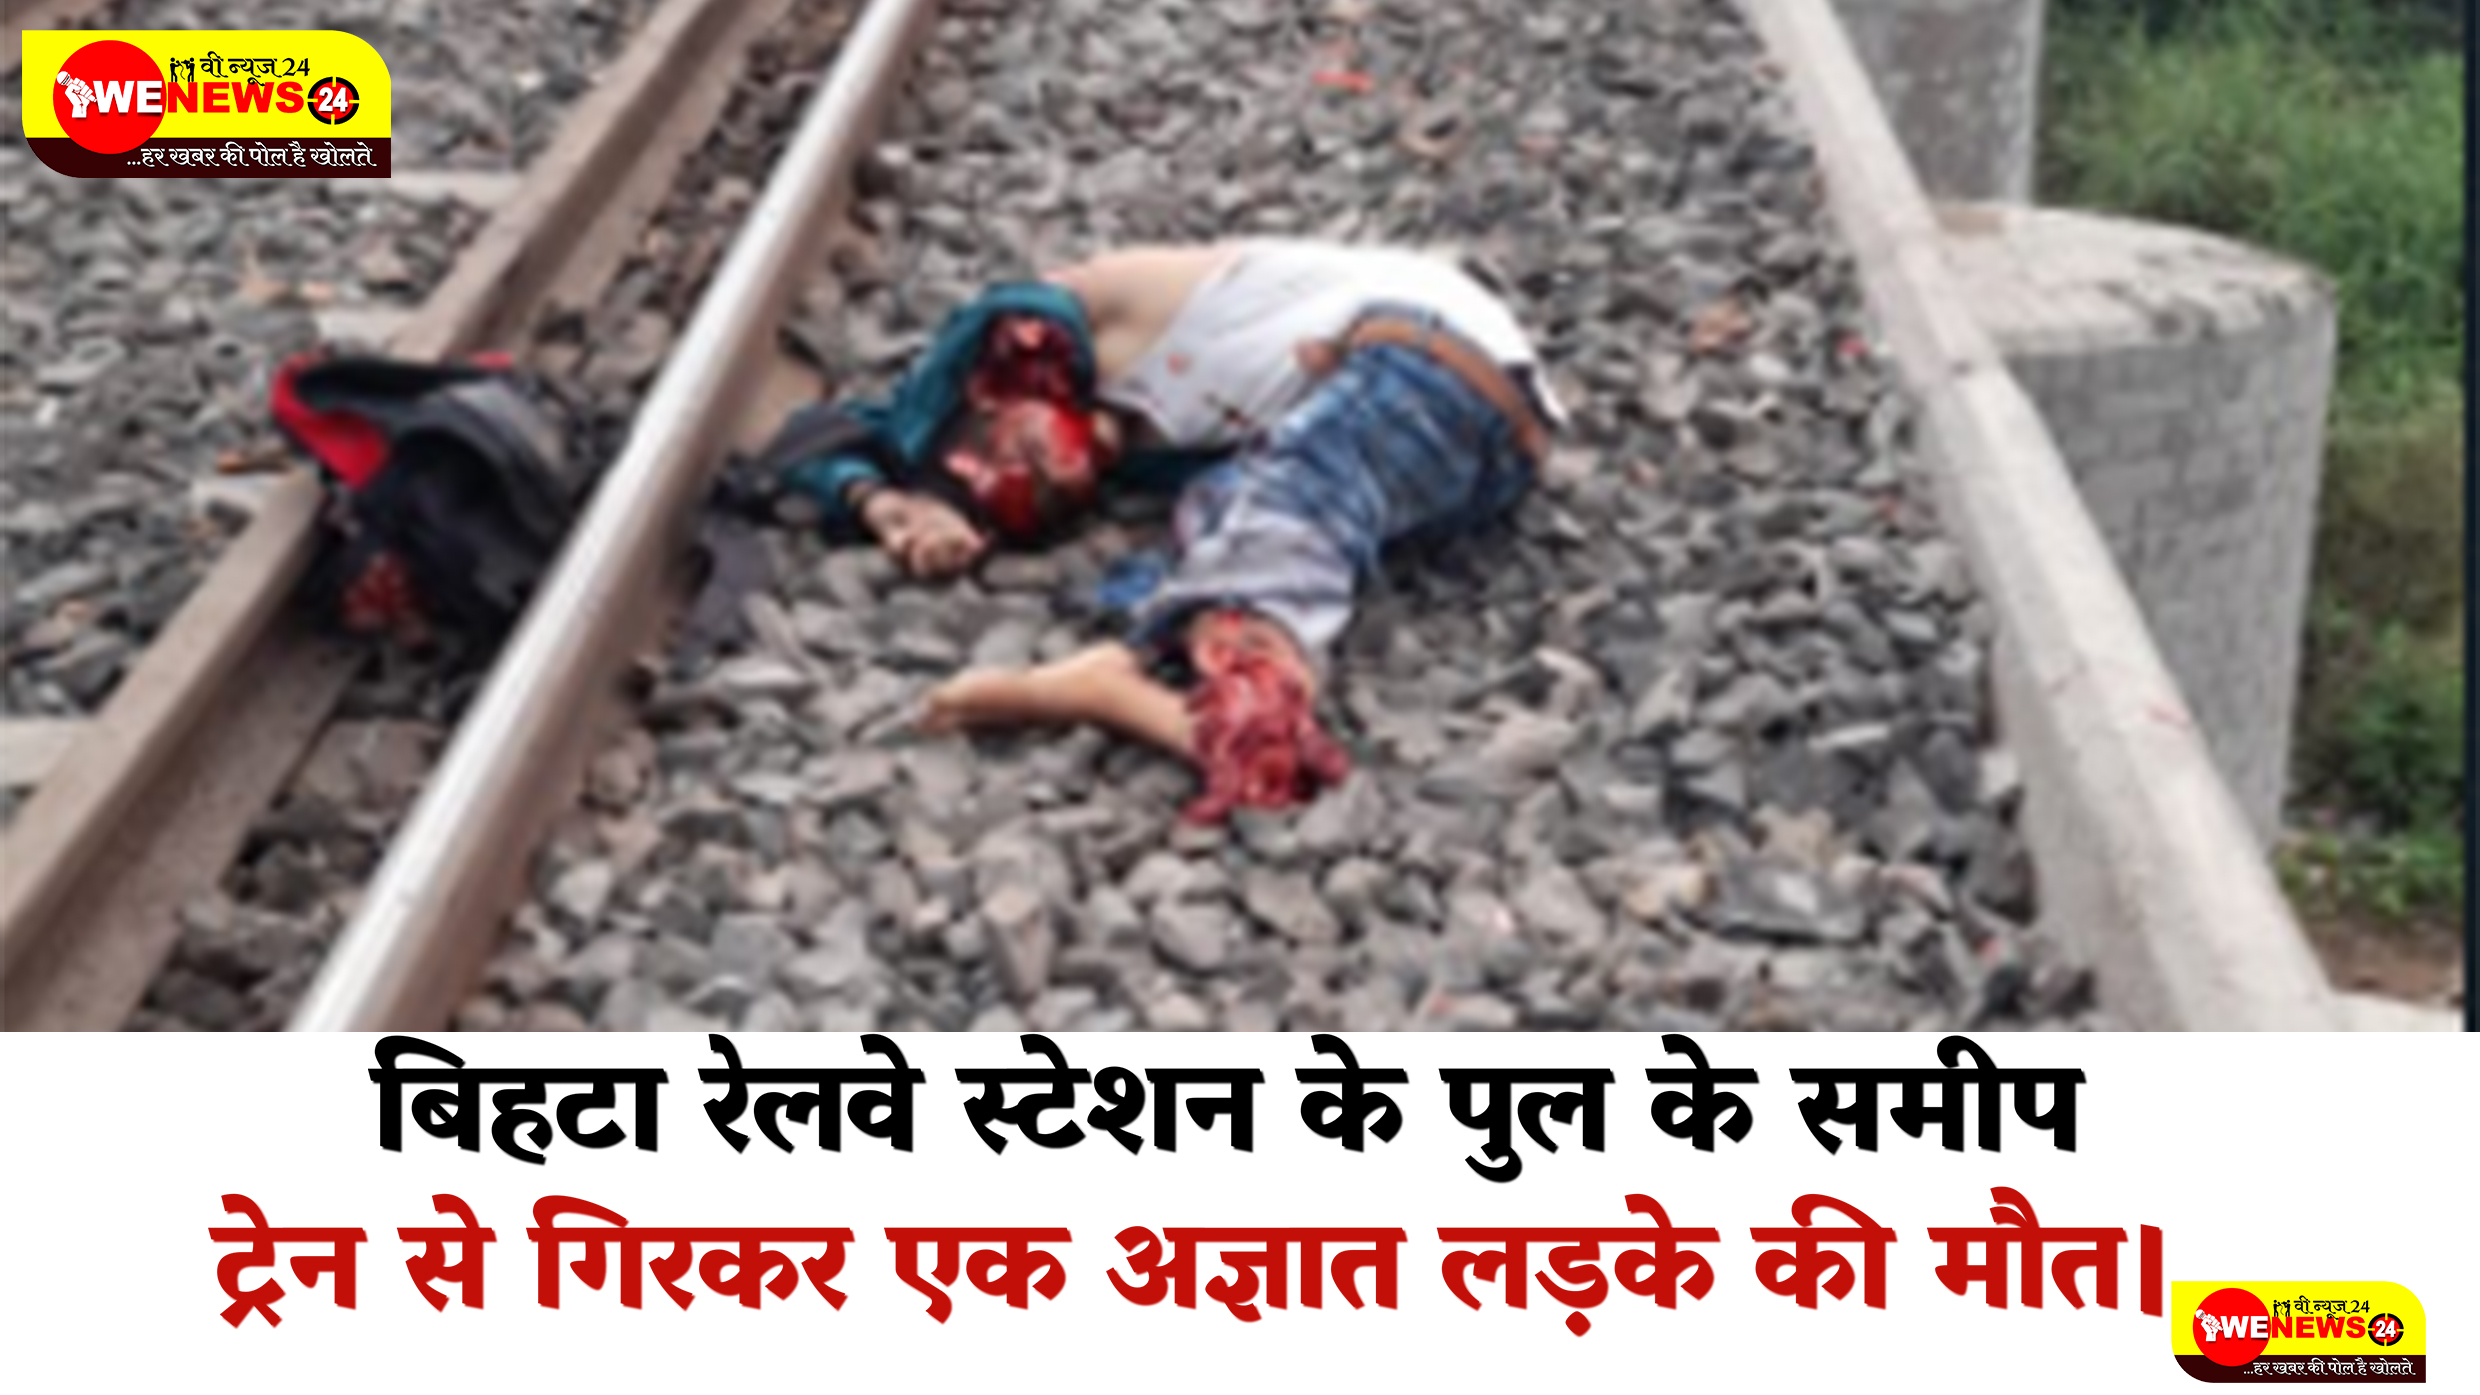 बिहटा रेलवे स्टेशन के पुल के समीप ट्रेन से गिरकर एक अज्ञात लड़के की मौत।